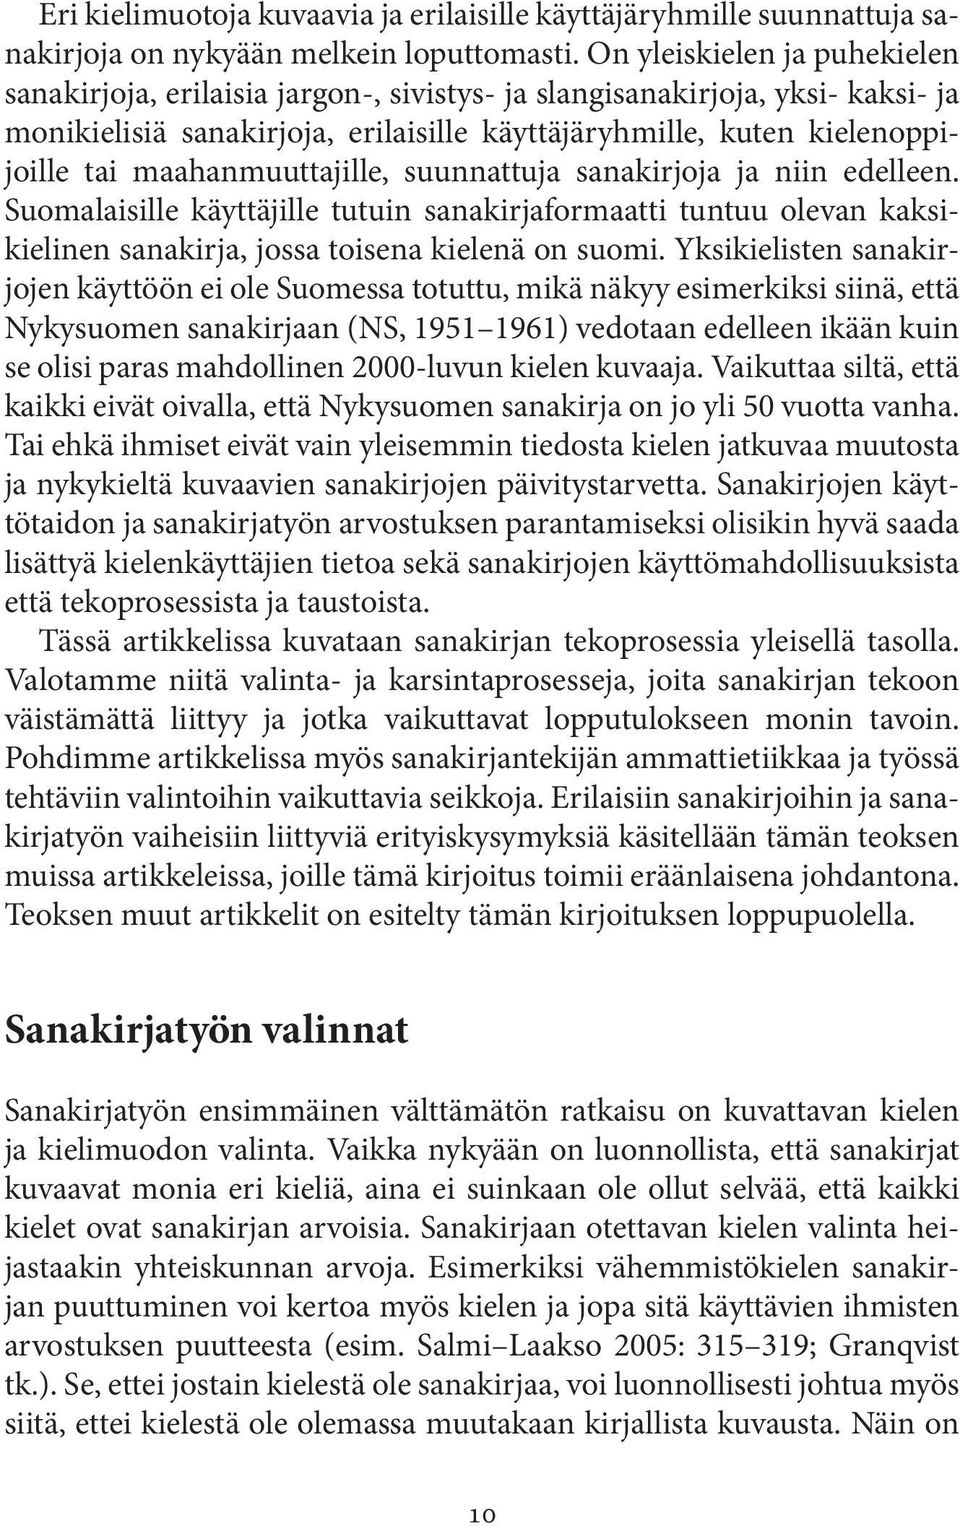 maahanmuuttajille, suunnattuja sanakirjoja ja niin edelleen. Suomalaisille käyttäjille tutuin sanakirjaformaatti tuntuu olevan kaksikielinen sanakirja, jossa toisena kielenä on suomi.